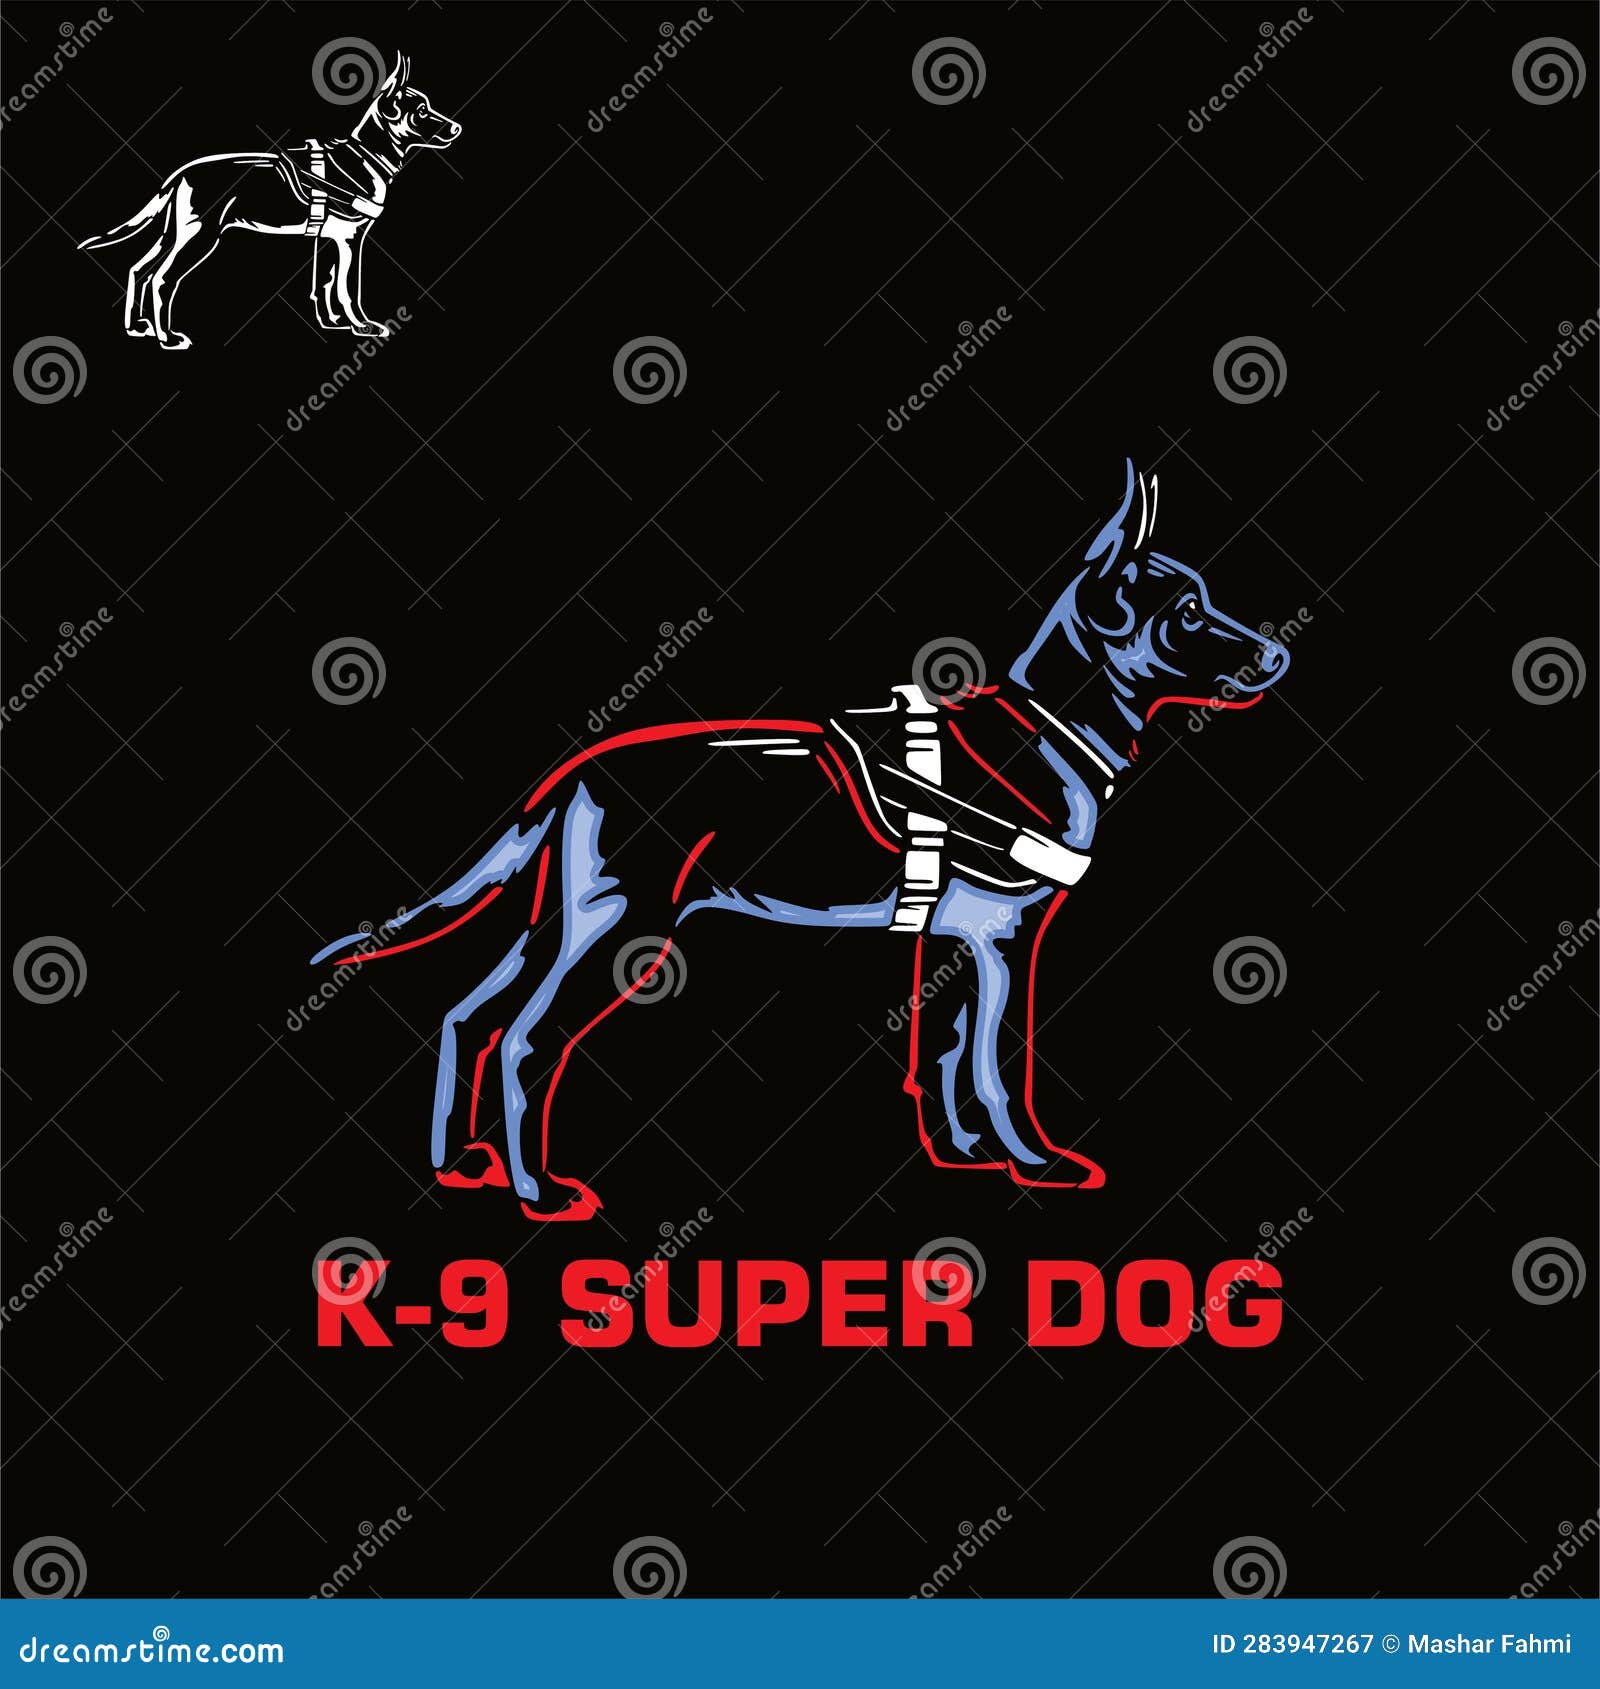 k-9 smart super dog logo